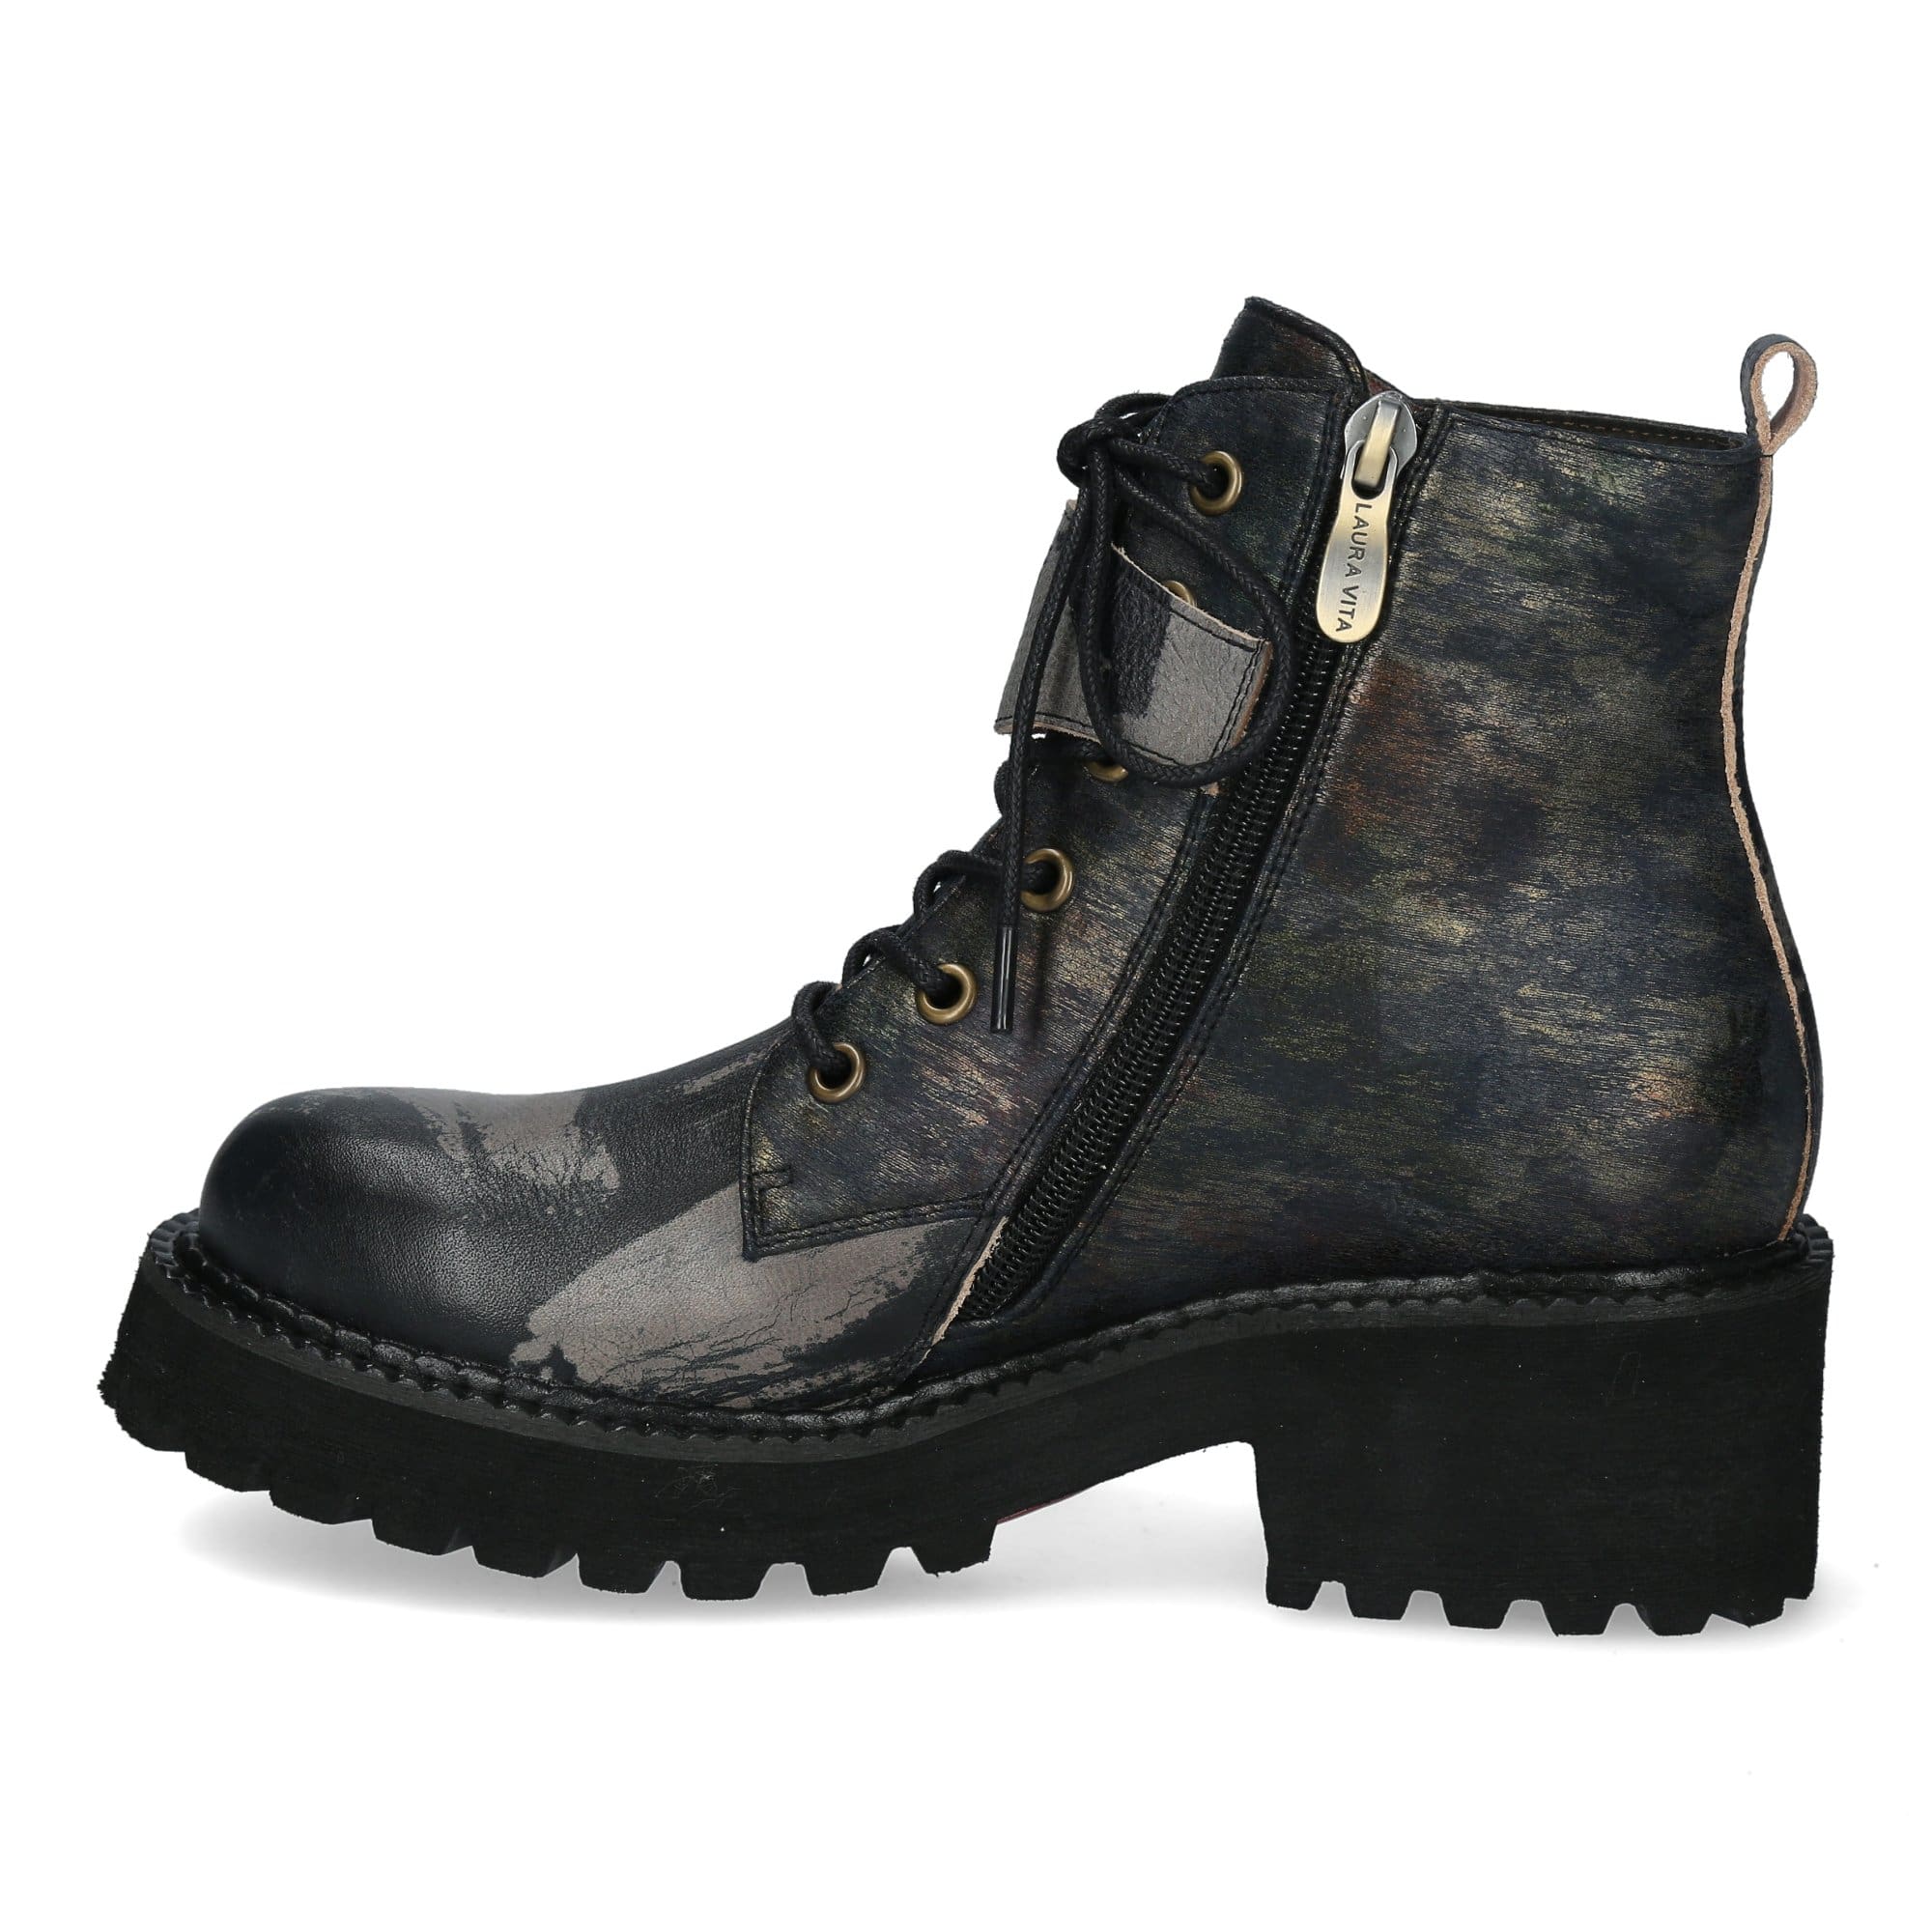 Shoe KEAO 02 - Boots